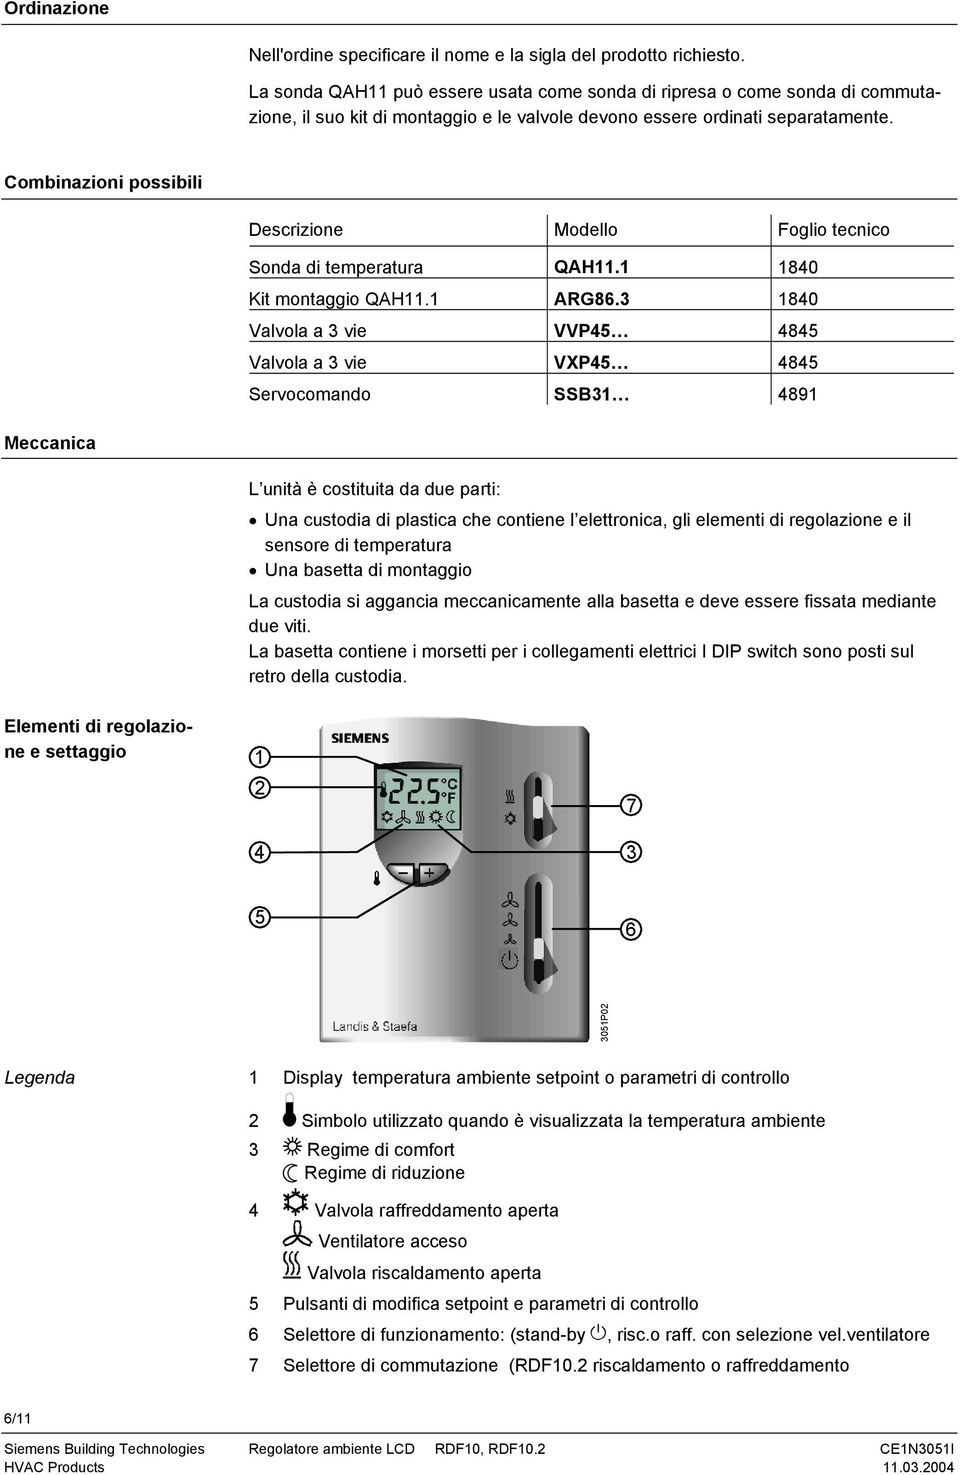 Combinazioni possibili Descrizione Modello Foglio tecnico Sonda di temperatura QAH11.1 1840 Kit montaggio QAH11.1 ARG86.